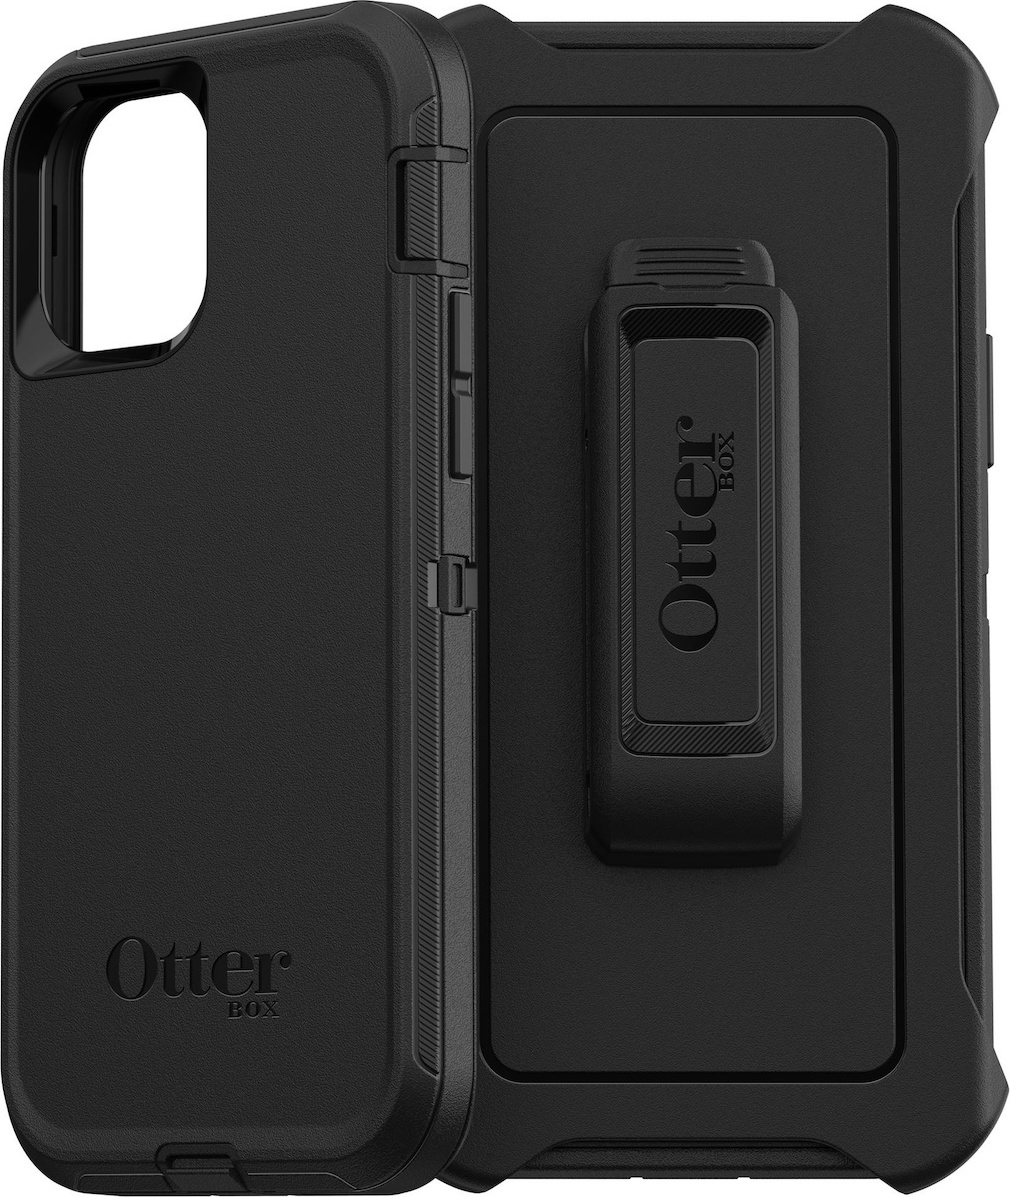 Θήκη Otterbox Defender για APPLE iPhone 12, 12 PRO 6.1 - ΜΑΥΡΟ - 77-65401